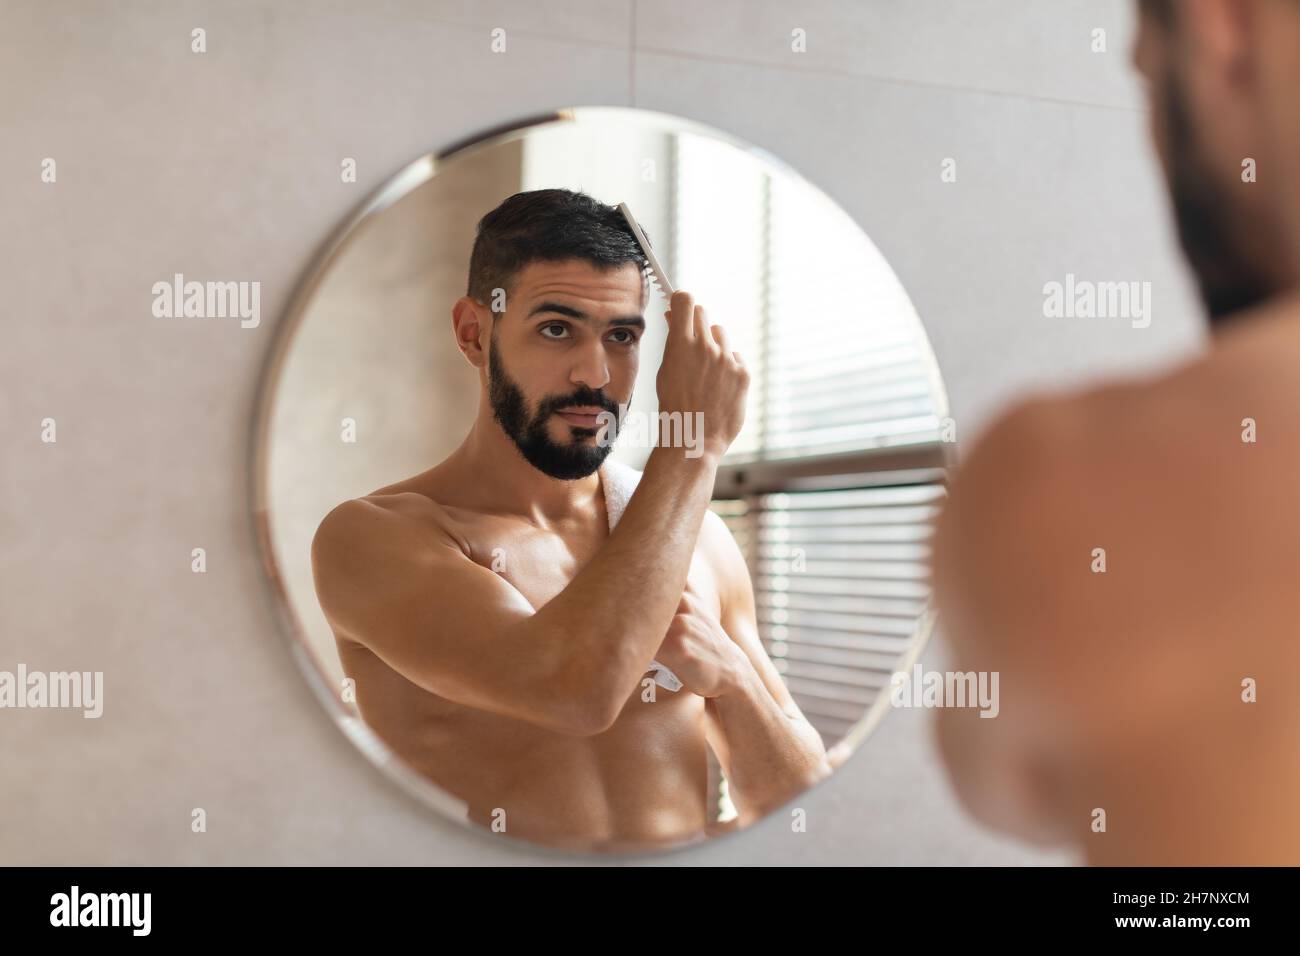 Vue arrière de l'homme regardant dans le miroir se brossant les cheveux Banque D'Images